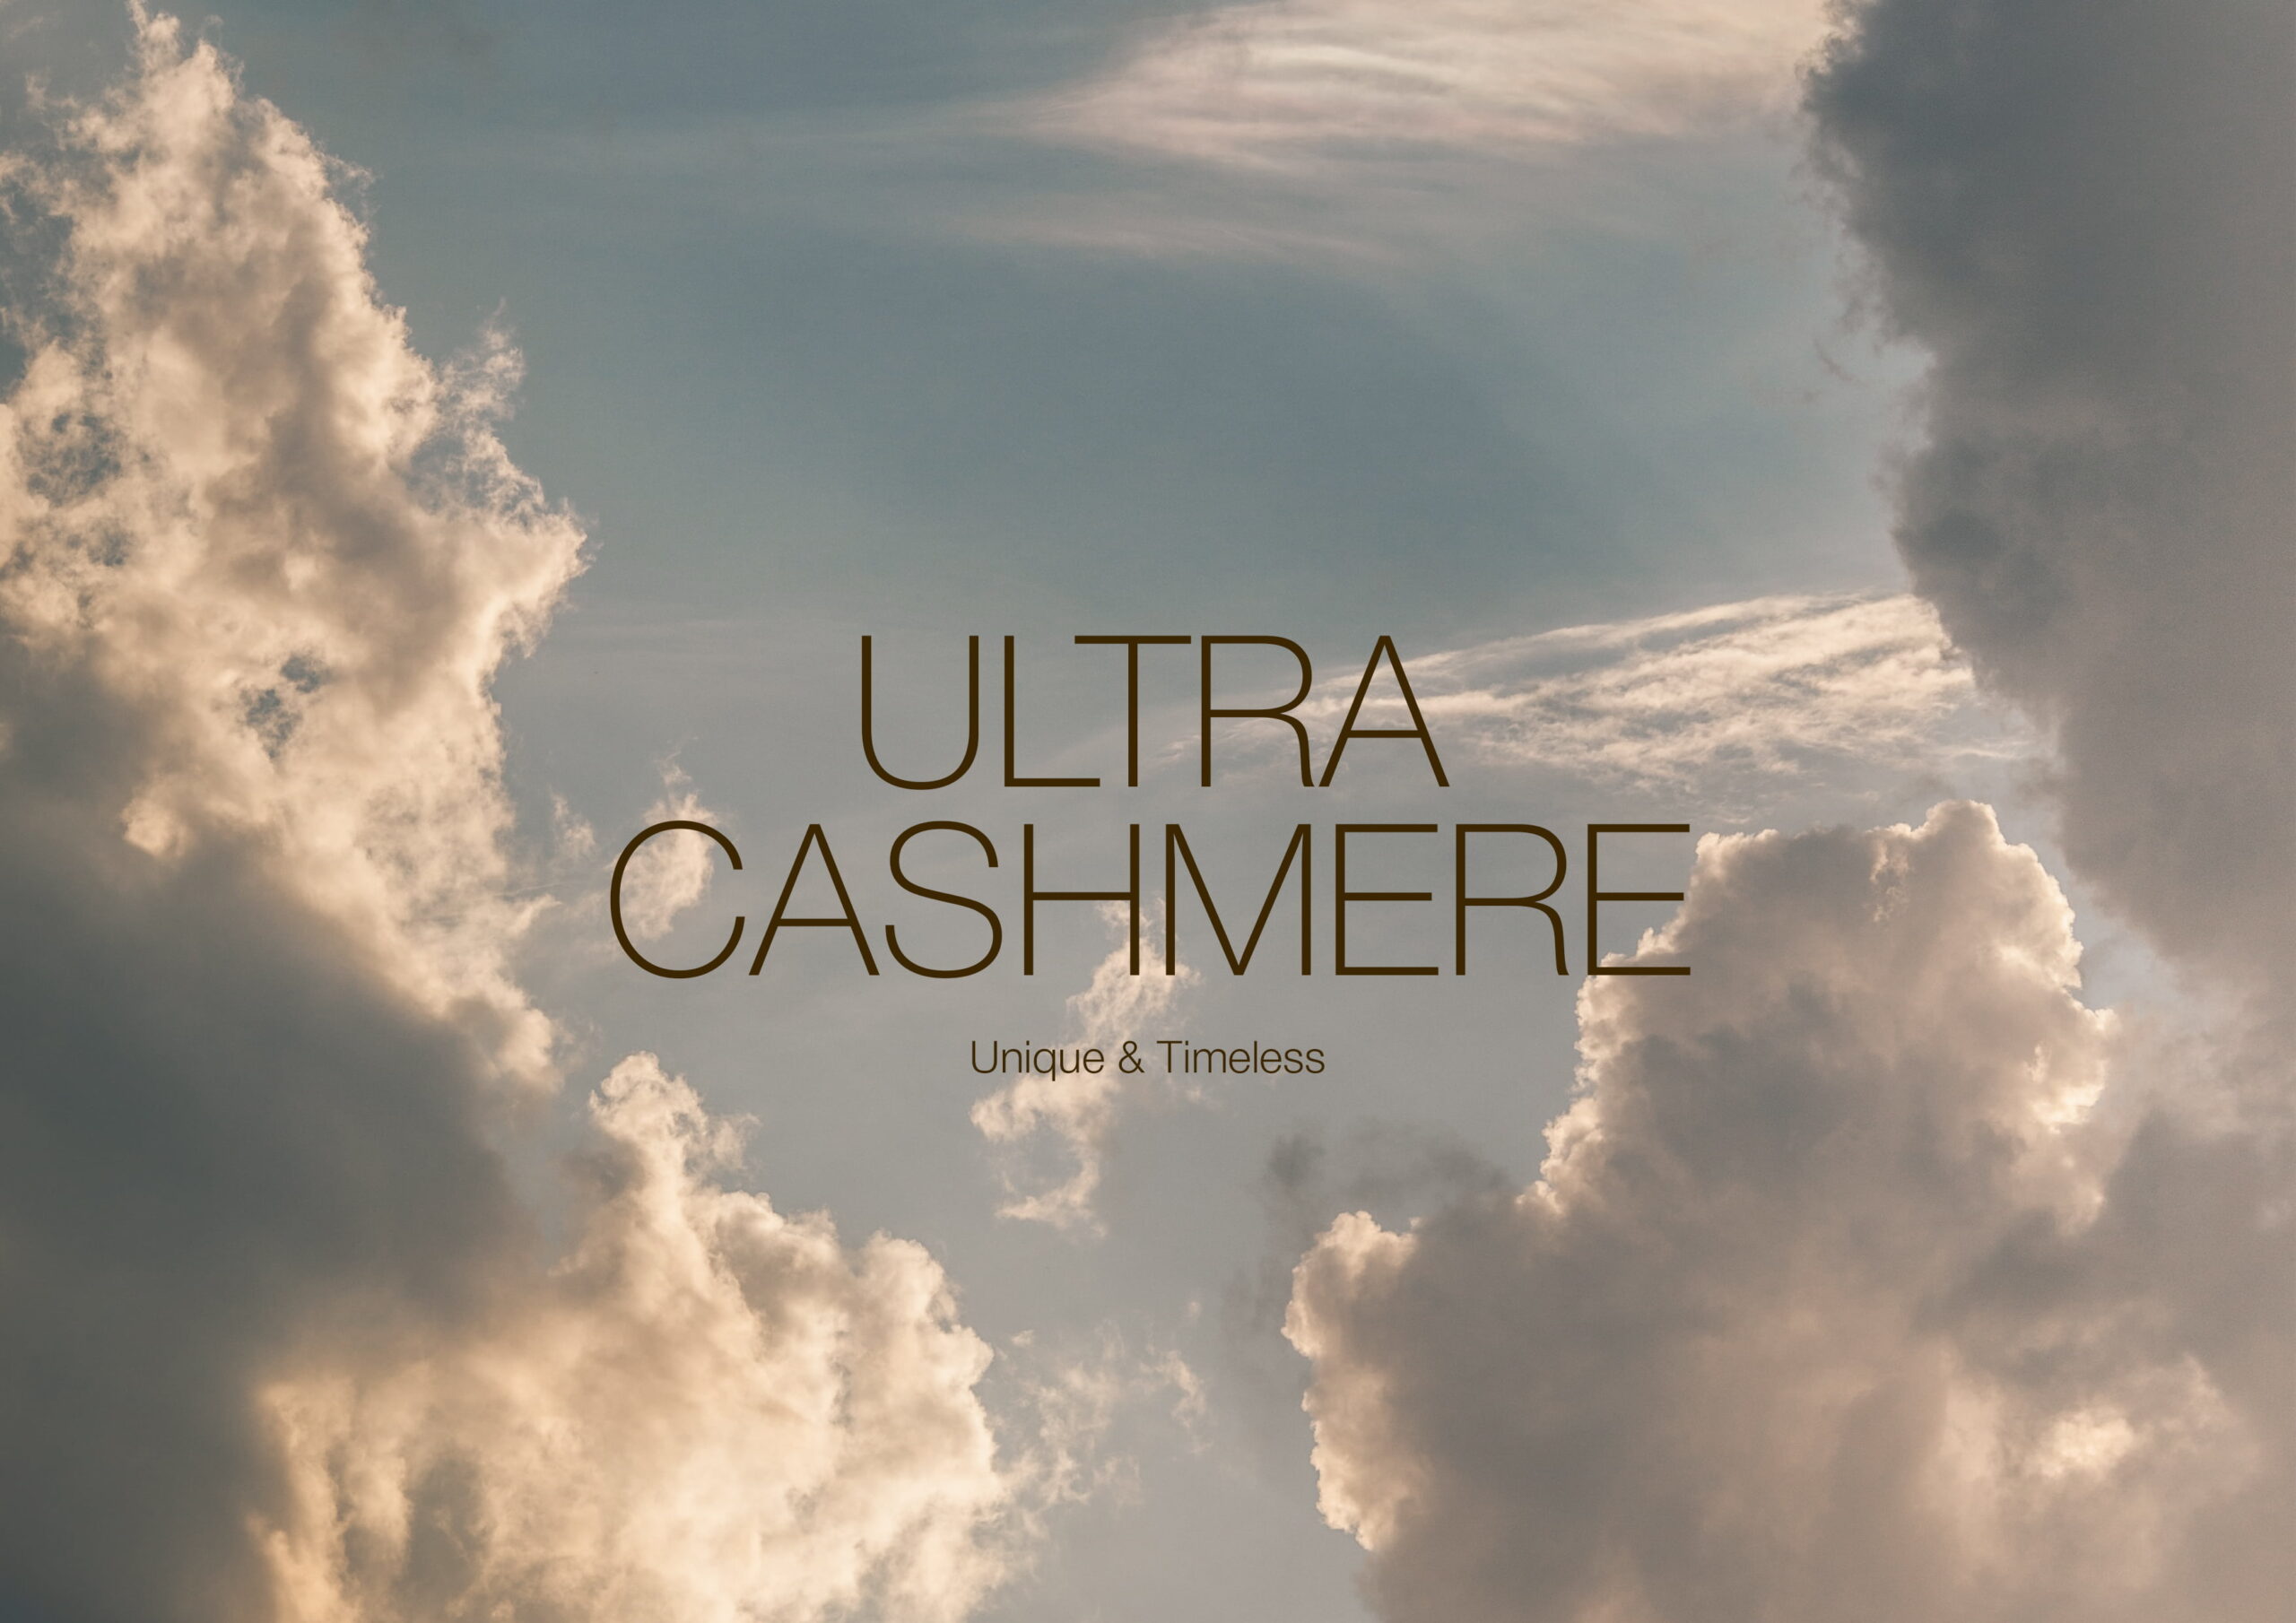 Borgo Cashmere - Il Ultra Cashmere